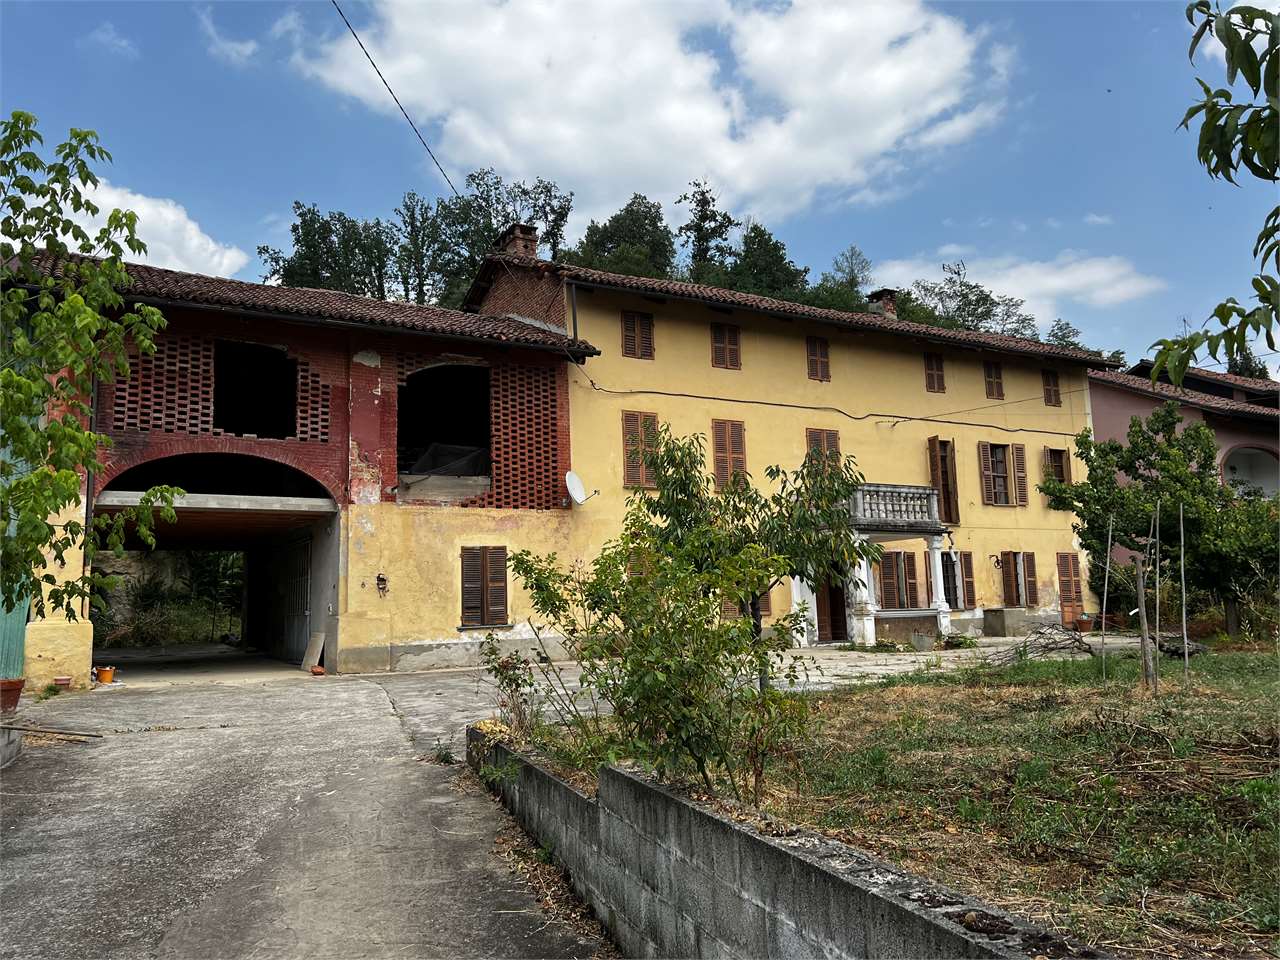 Rustico / Casale in vendita a Baldichieri d'Asti, 12 locali, prezzo € 125.000 | PortaleAgenzieImmobiliari.it